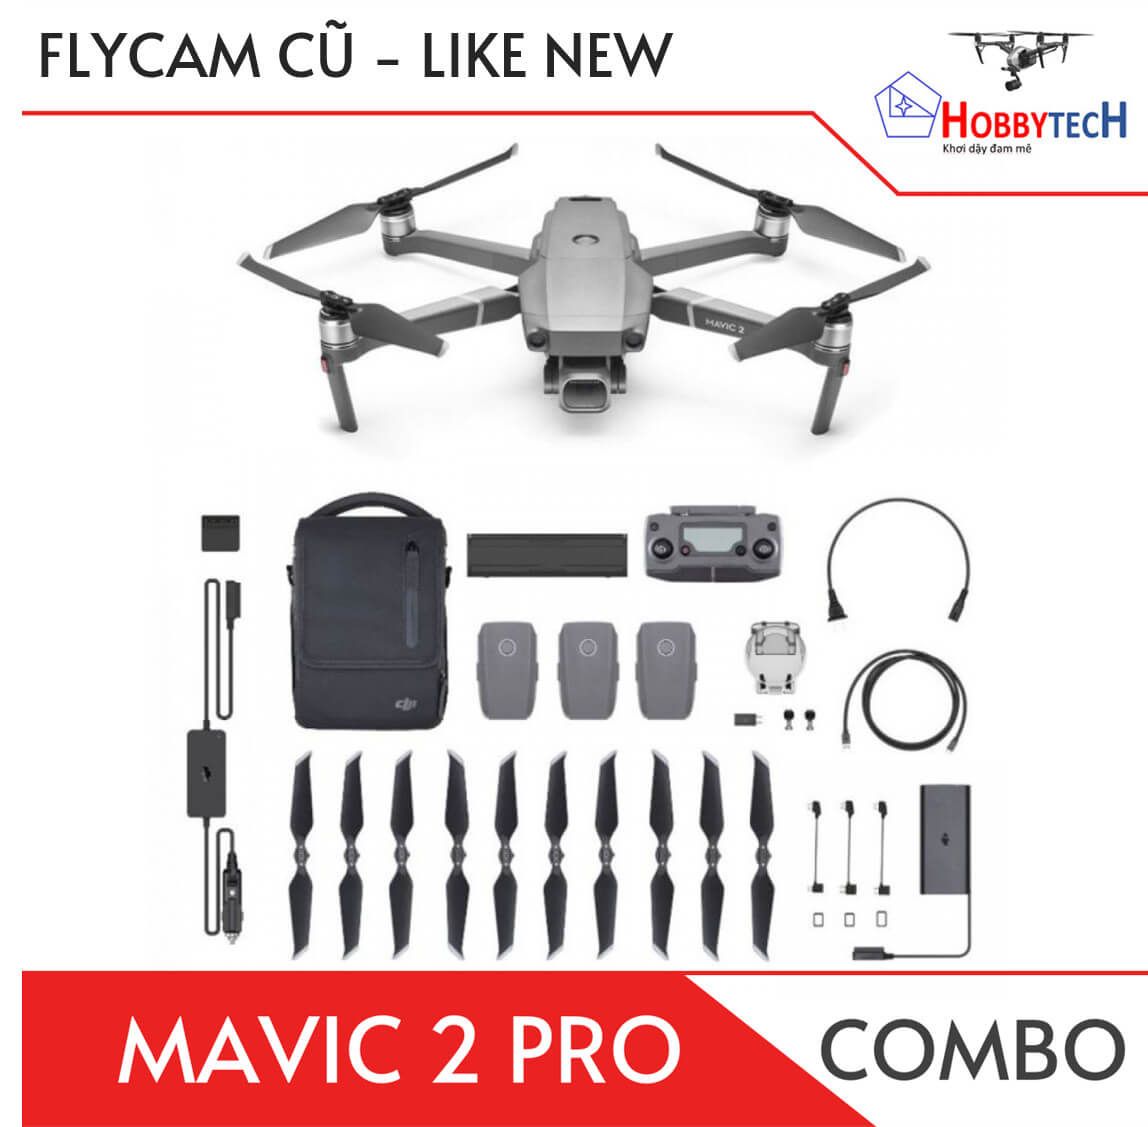 Mavic 2 Pro cũ - Fly more combo - Cũ  (Like new)